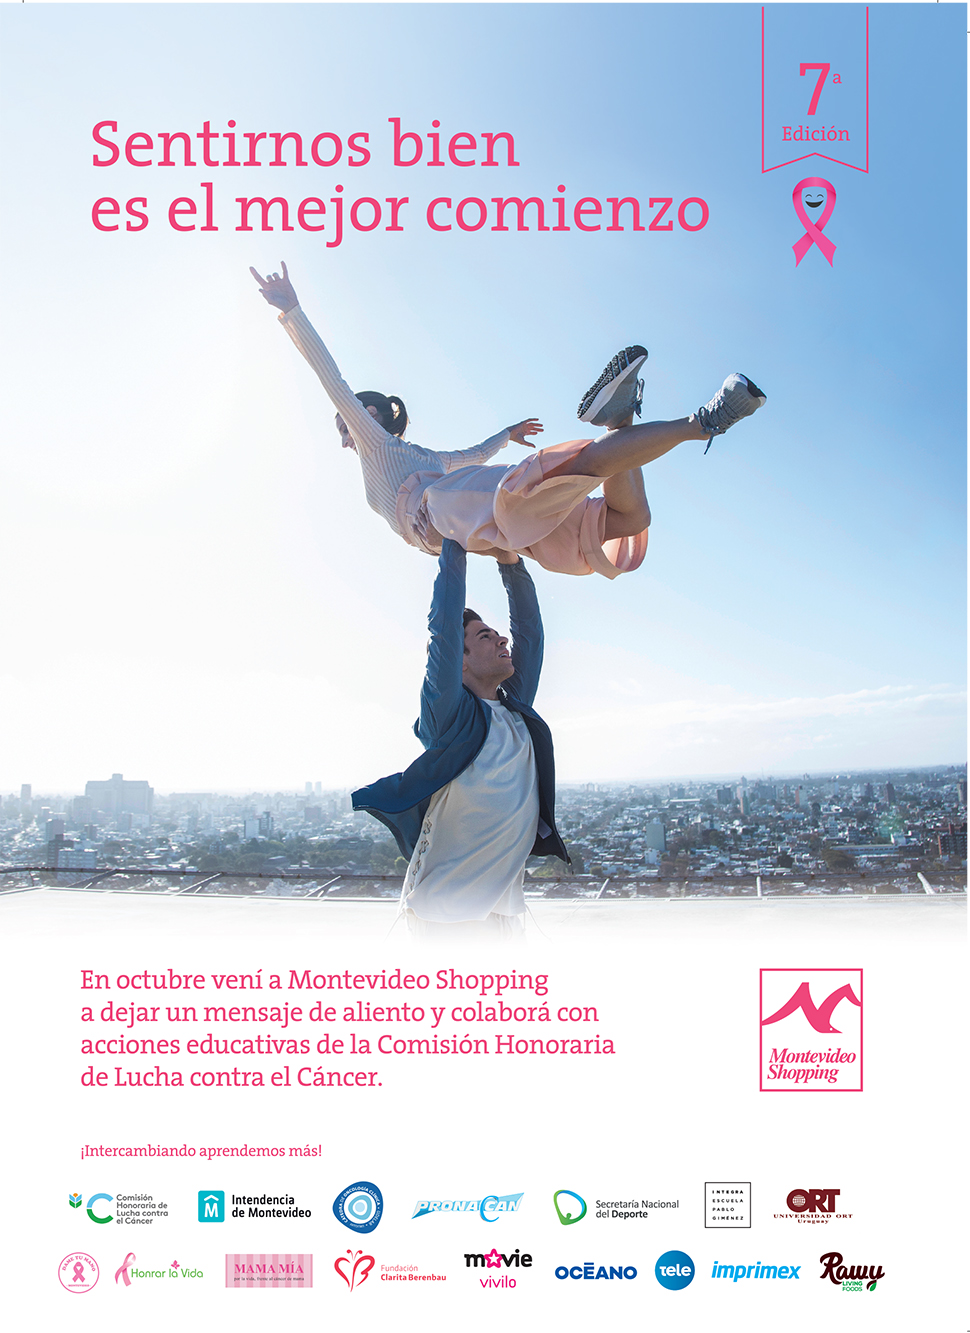 Montevideo Shopping presenta 7ª Edición de campaña de lucha contra el cáncer de mama: “Sentirnos bien es el mejor comienzo”